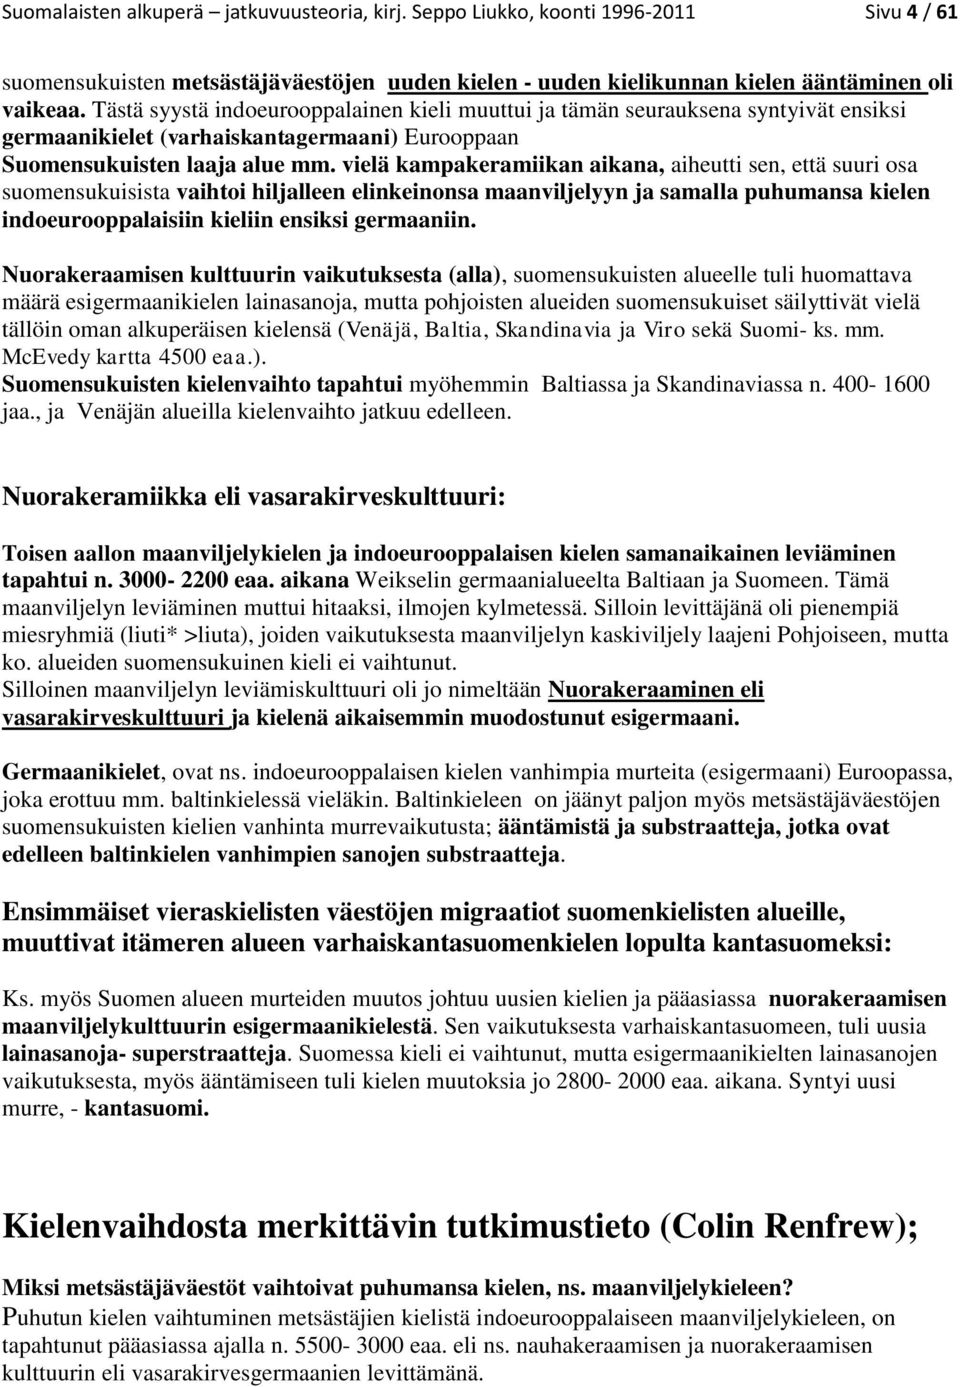 vielä kampakeramiikan aikana, aiheutti sen, että suuri osa suomensukuisista vaihtoi hiljalleen elinkeinonsa maanviljelyyn ja samalla puhumansa kielen indoeurooppalaisiin kieliin ensiksi germaaniin.